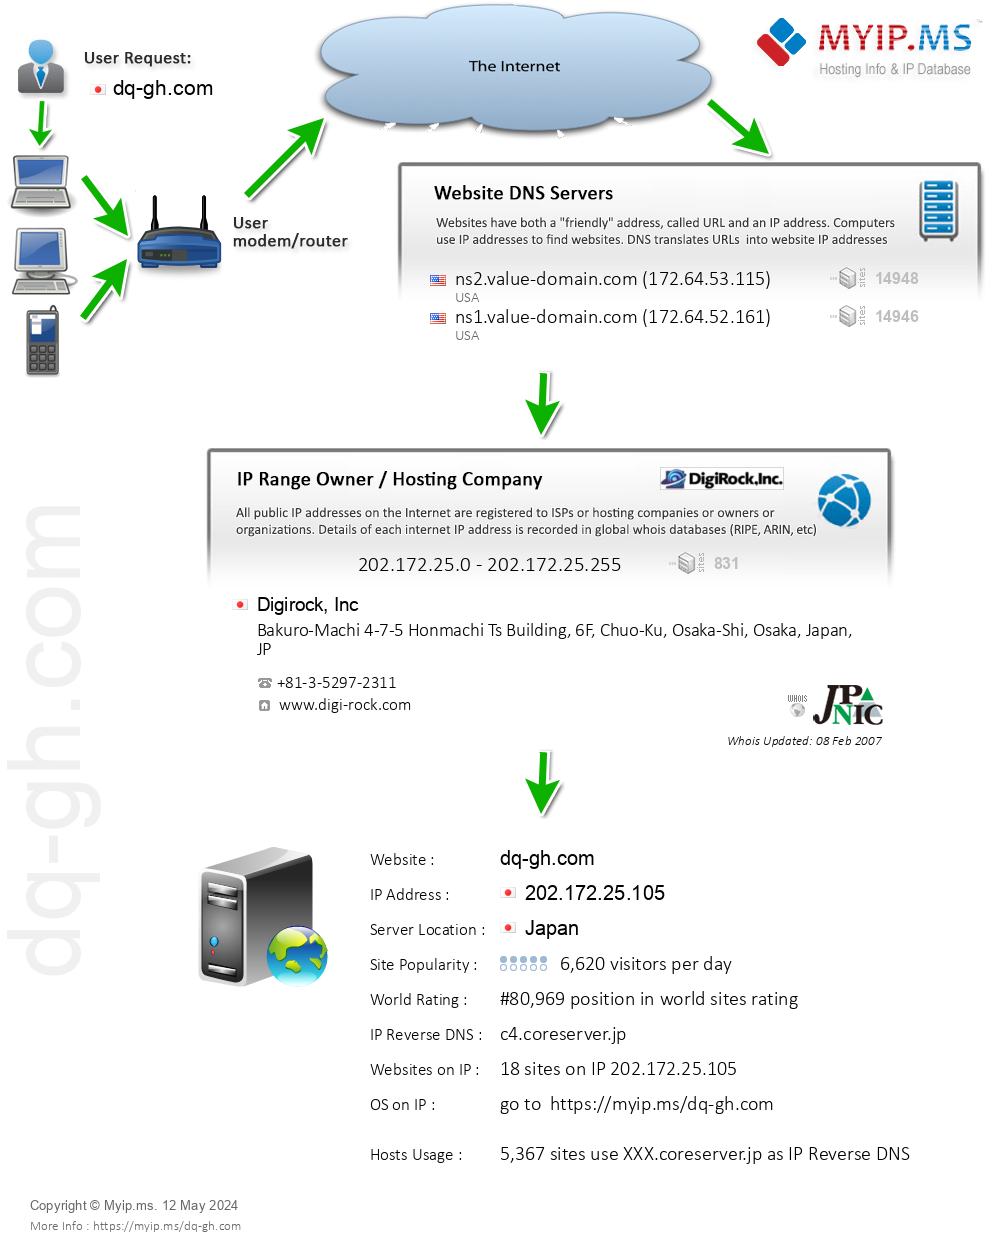 Dq-gh.com - Website Hosting Visual IP Diagram